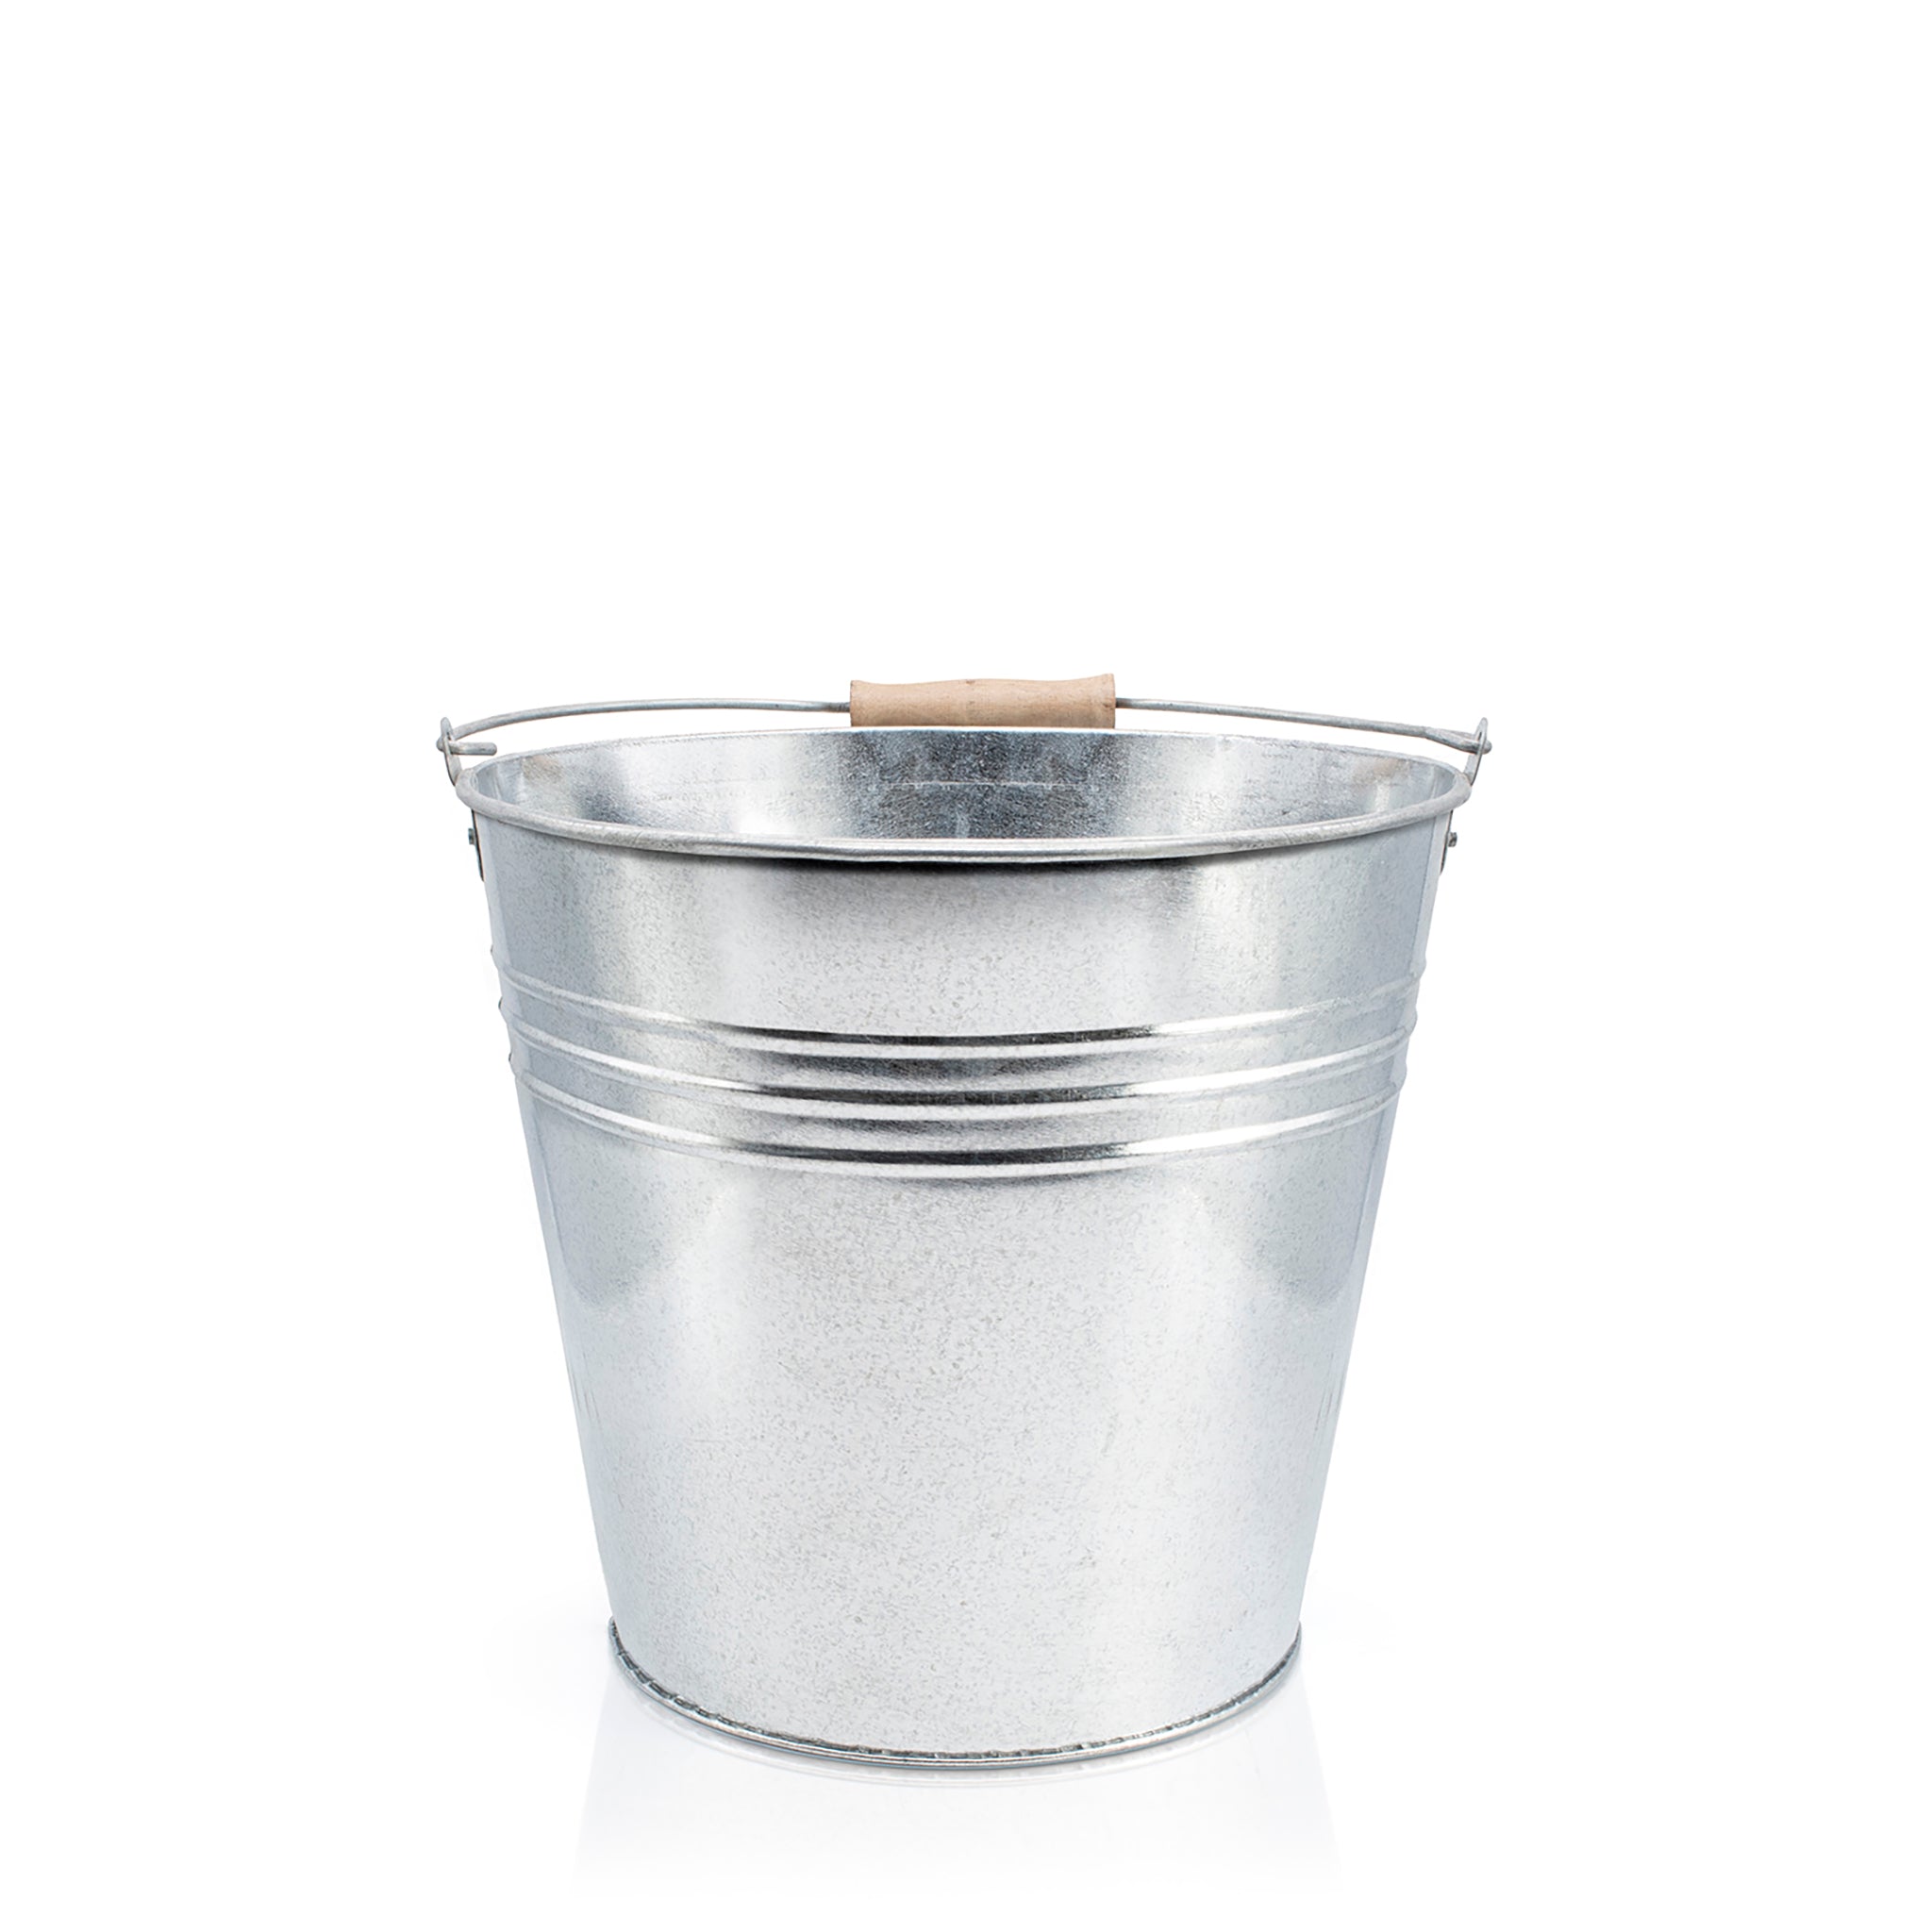 galvanised metal bucket with wooden handle